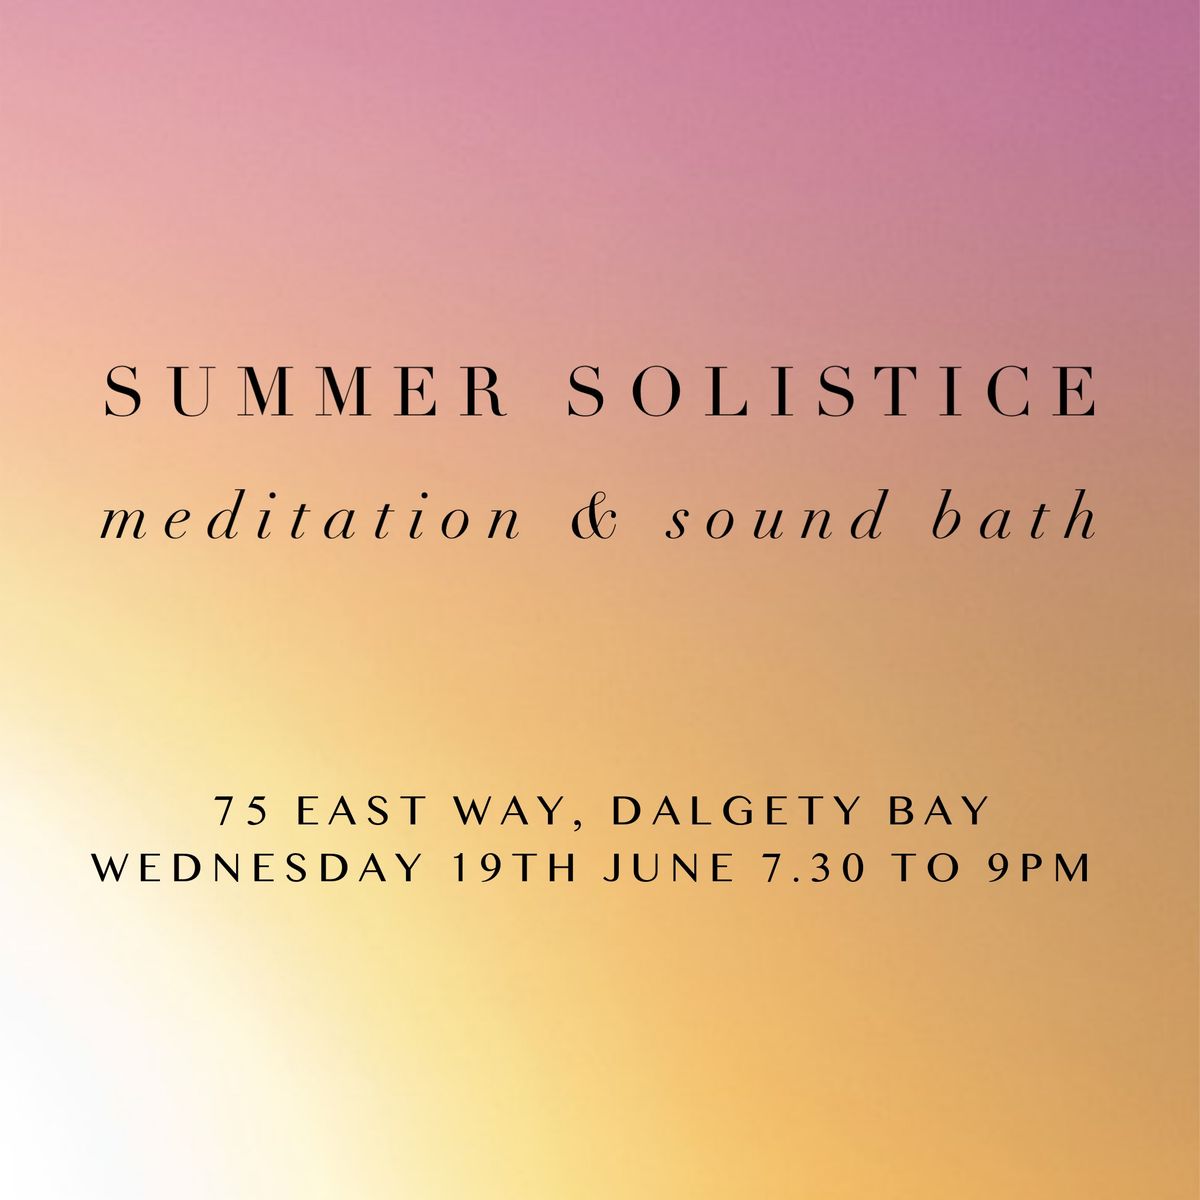 Summer Solistice Meditation & Sound Bath